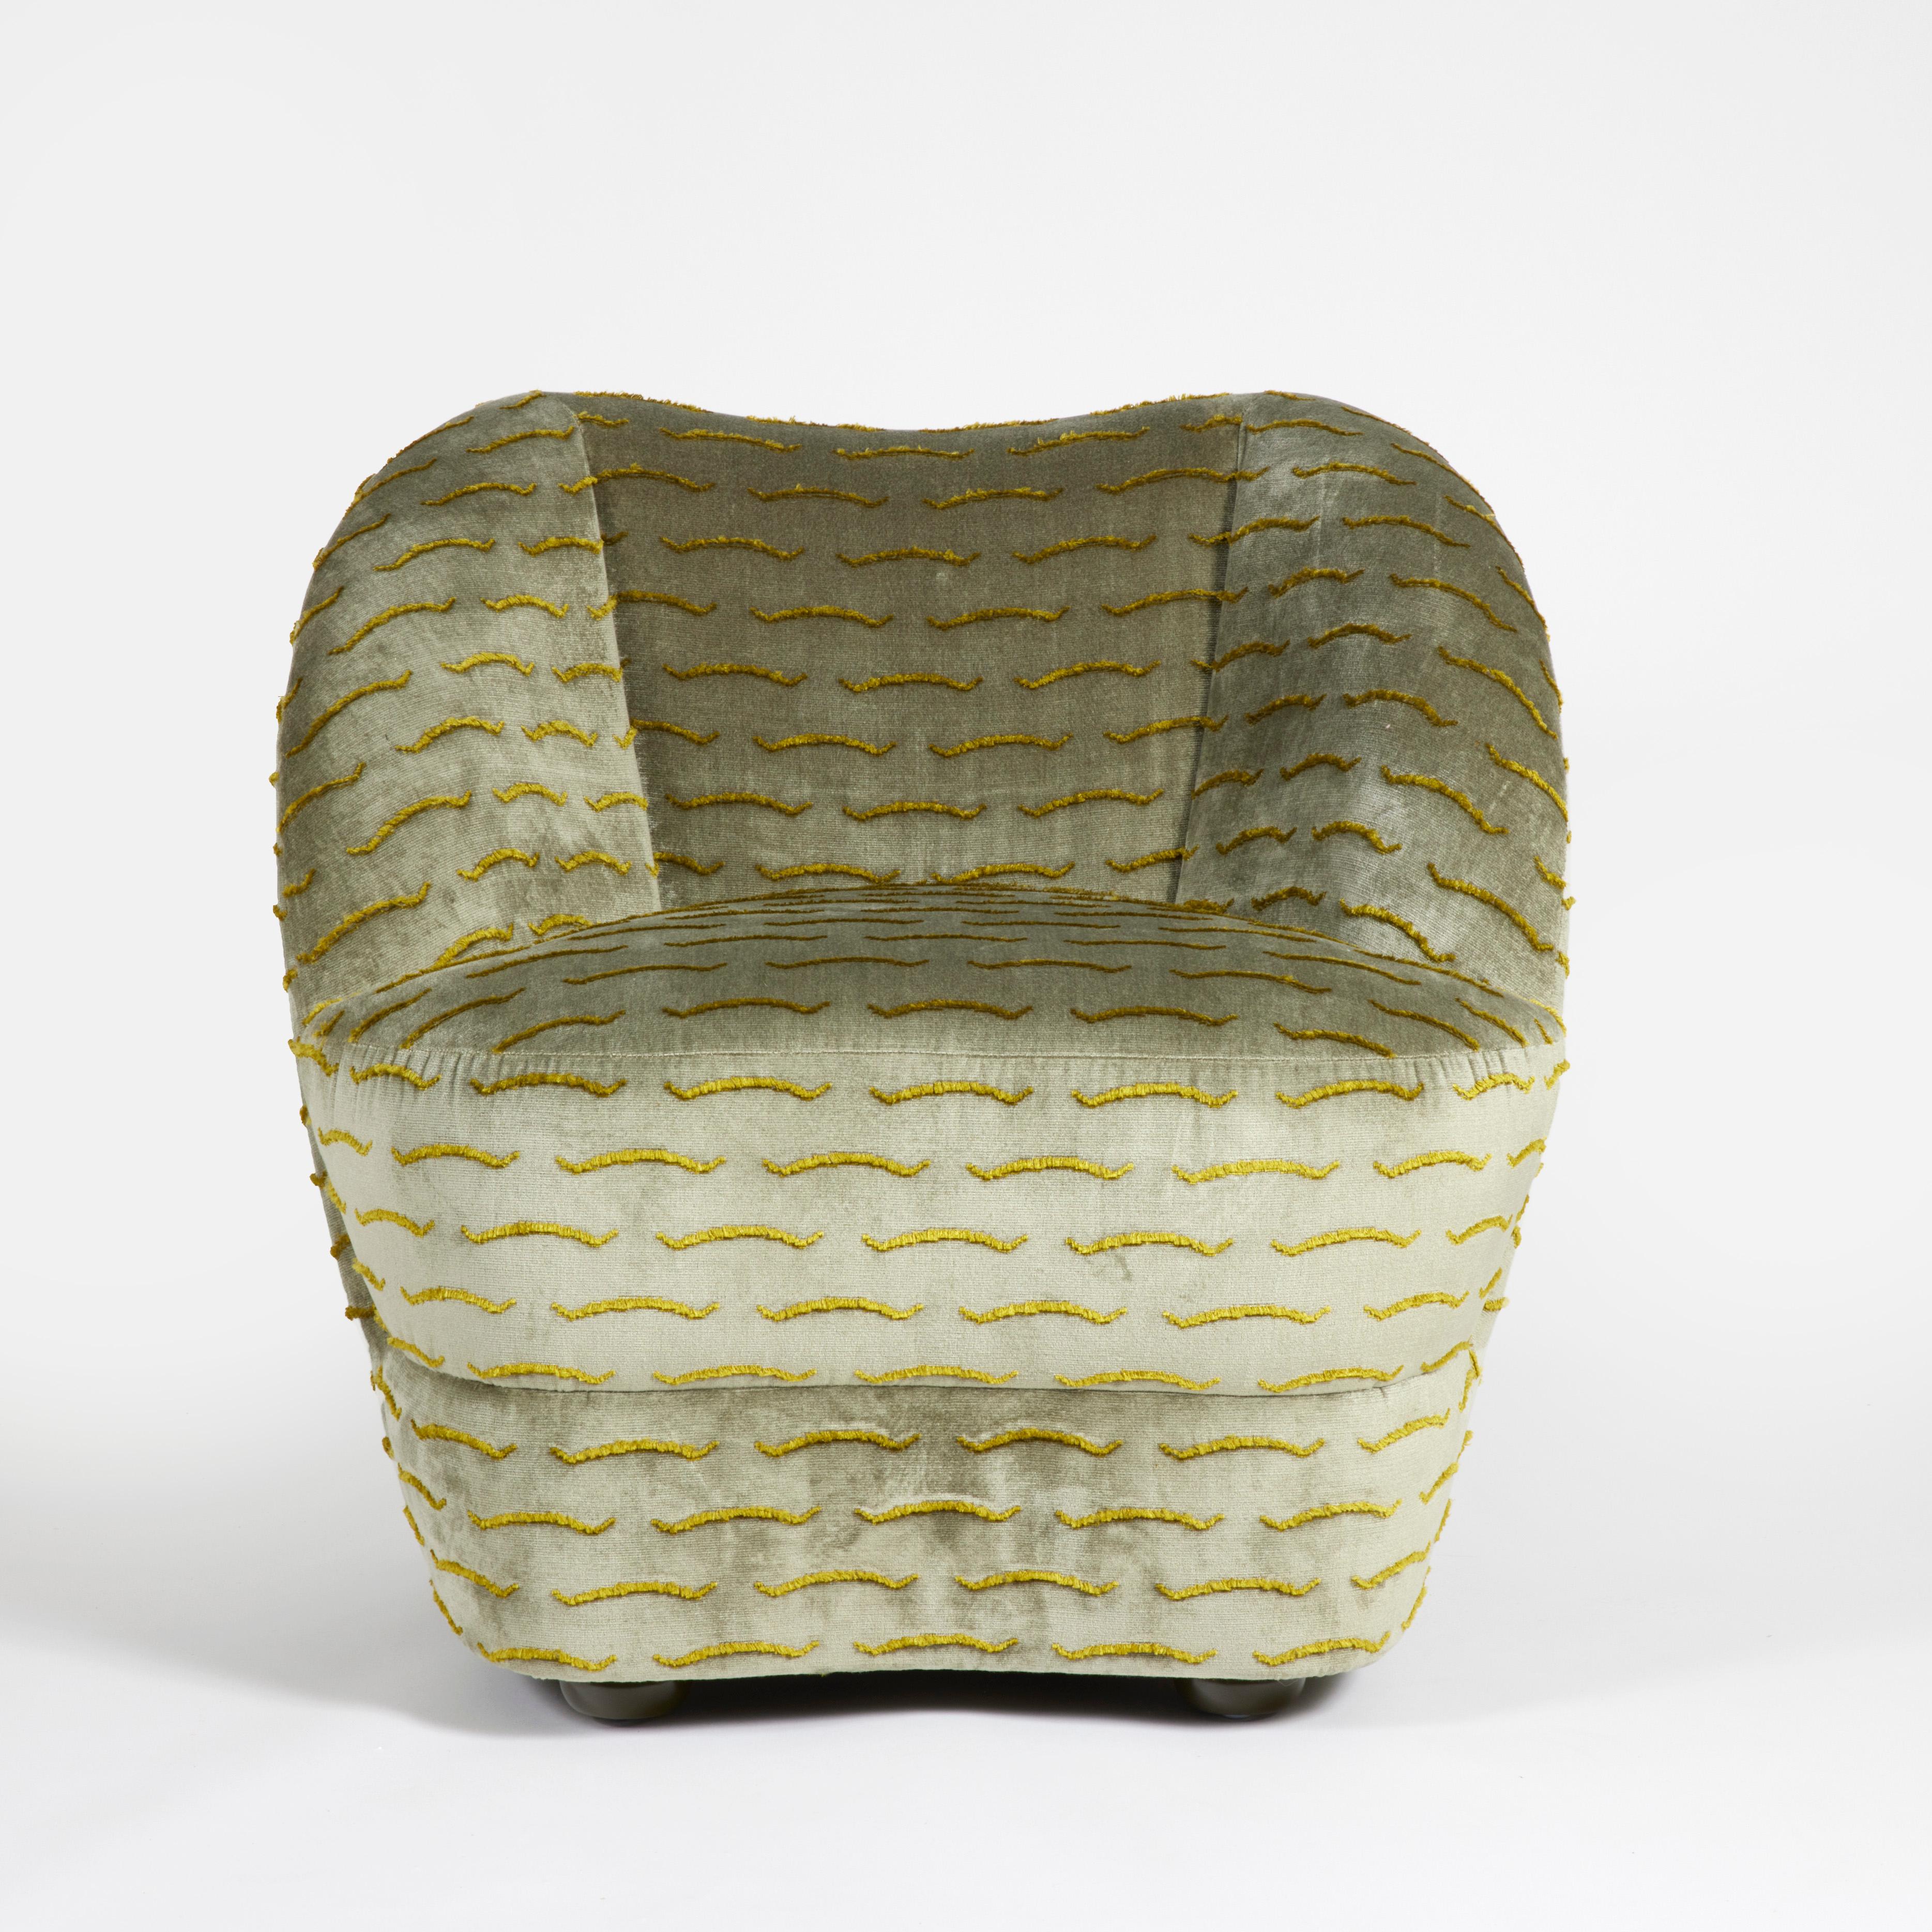 Vollkommen gepolsterter Sessel aus Samt mit lackierten Holzfüßen.
Hergestellt in Frankreich.
 